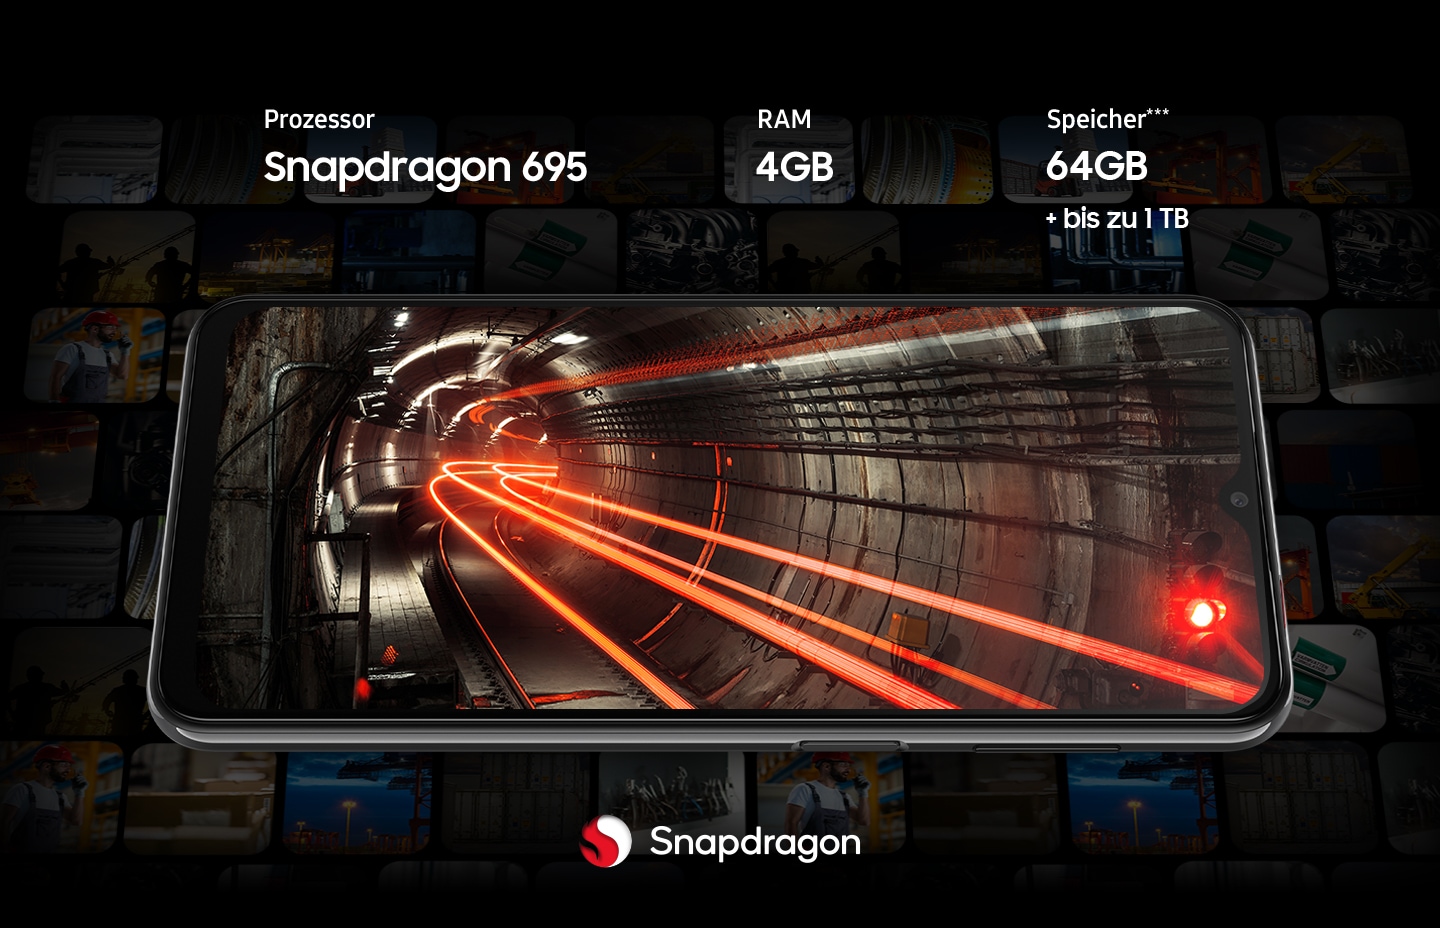 Ein Galaxy A23 5G zeigt auf seinem Display einen Tunnel, der von roten Lichtern durchzogen ist. Um das Smartphone herum sind verblasste Vorschaubilder verschiedener Inhalte zu sehen. Das Gerät verfügt über einen Snapdragon 695-Prozessor.